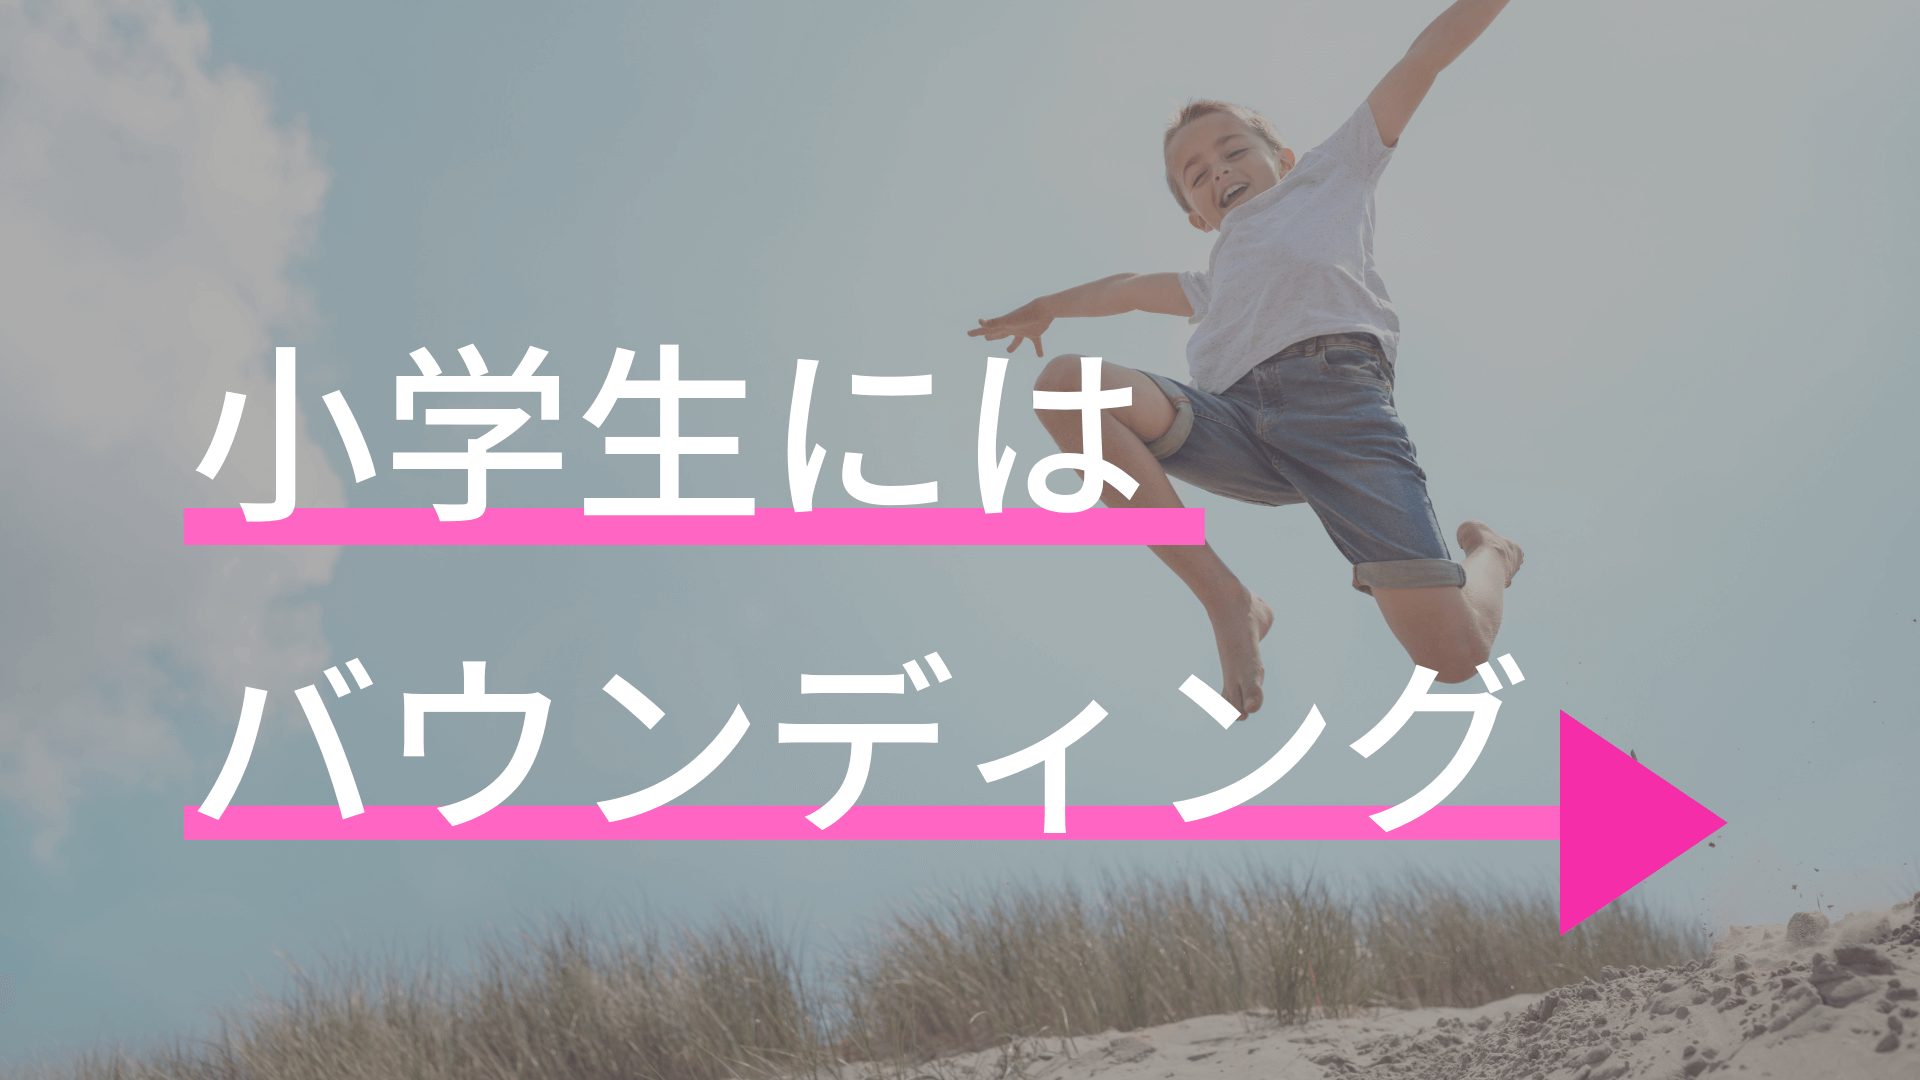 親必見 小学生が速く走るための練習ならバウンディングだけやっておけばいい 東京で小学生の足を確実に速く するならgoogle 4 9の陸上アカデミア